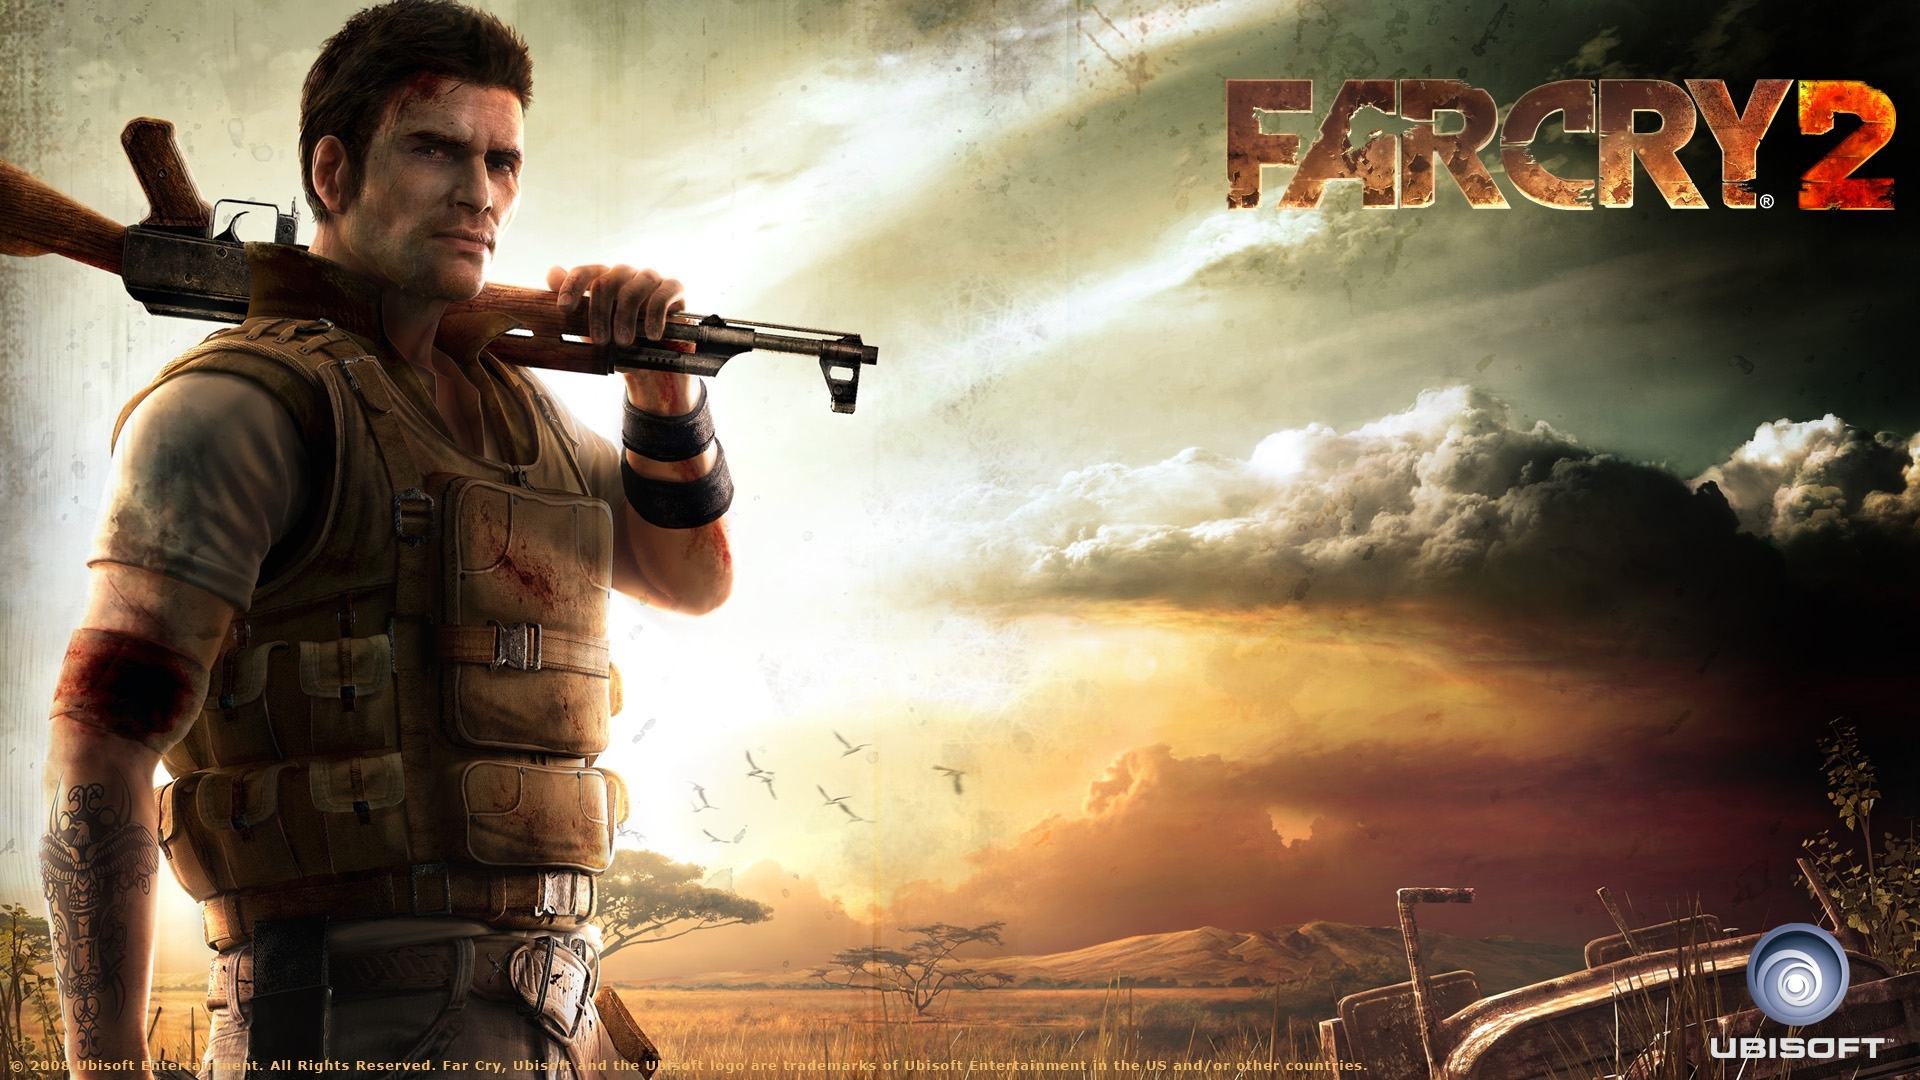 Melhores papéis de parede de Far Cry 2 para tela do telefone